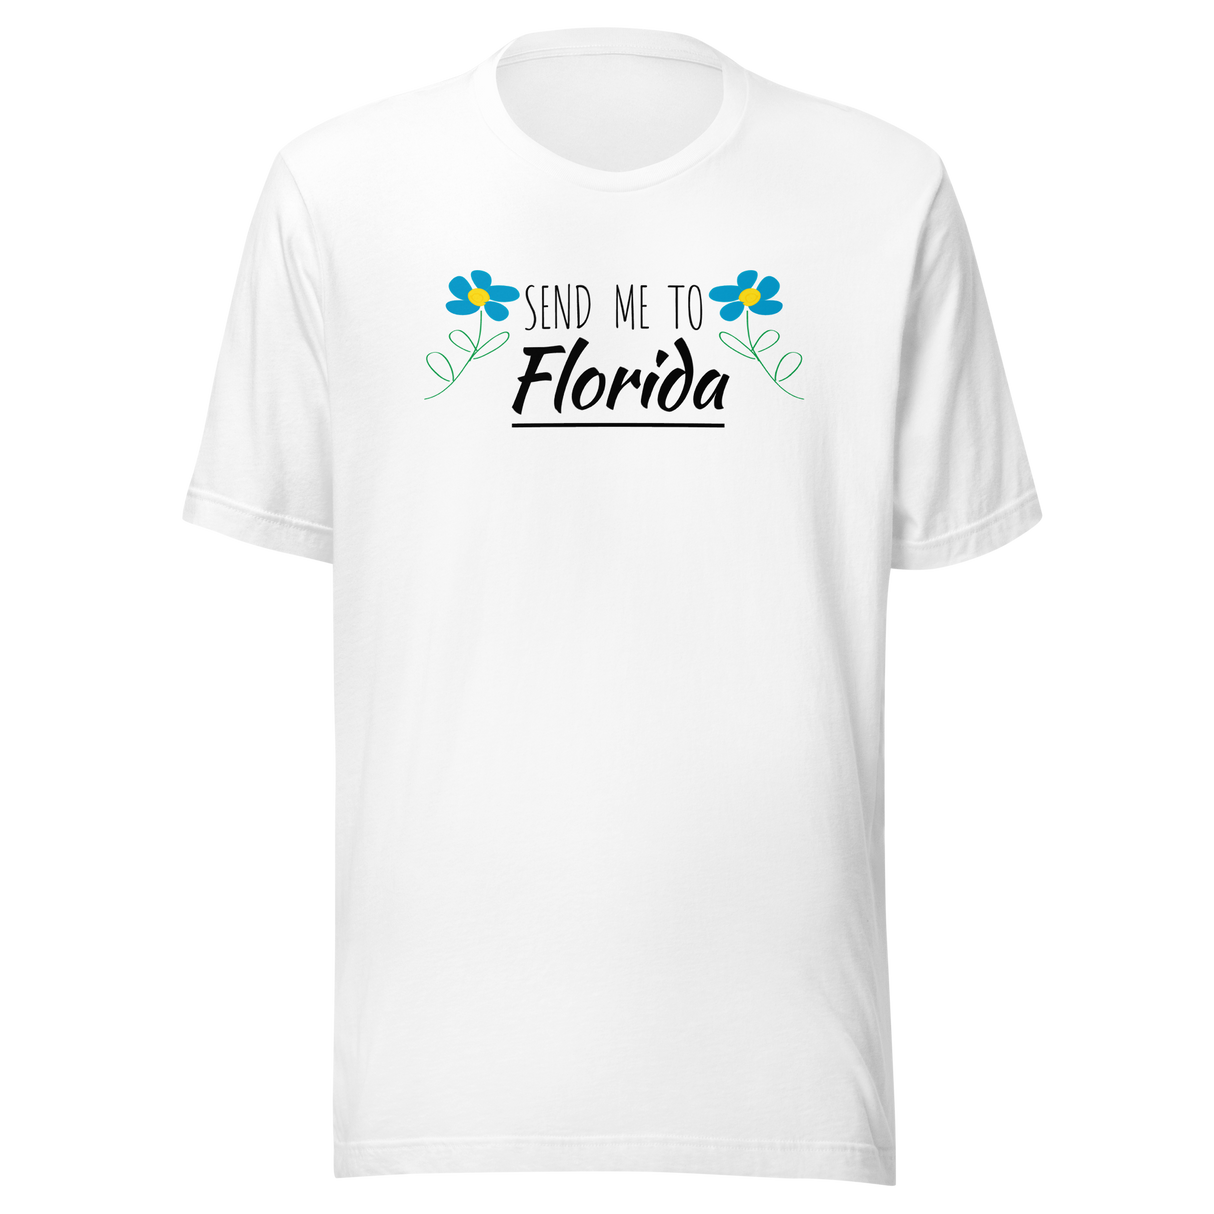 send-me-to-florida-america-tee-miami-t-shirt-tampa-tee-travel-t-shirt-road-trip-tee#color_white